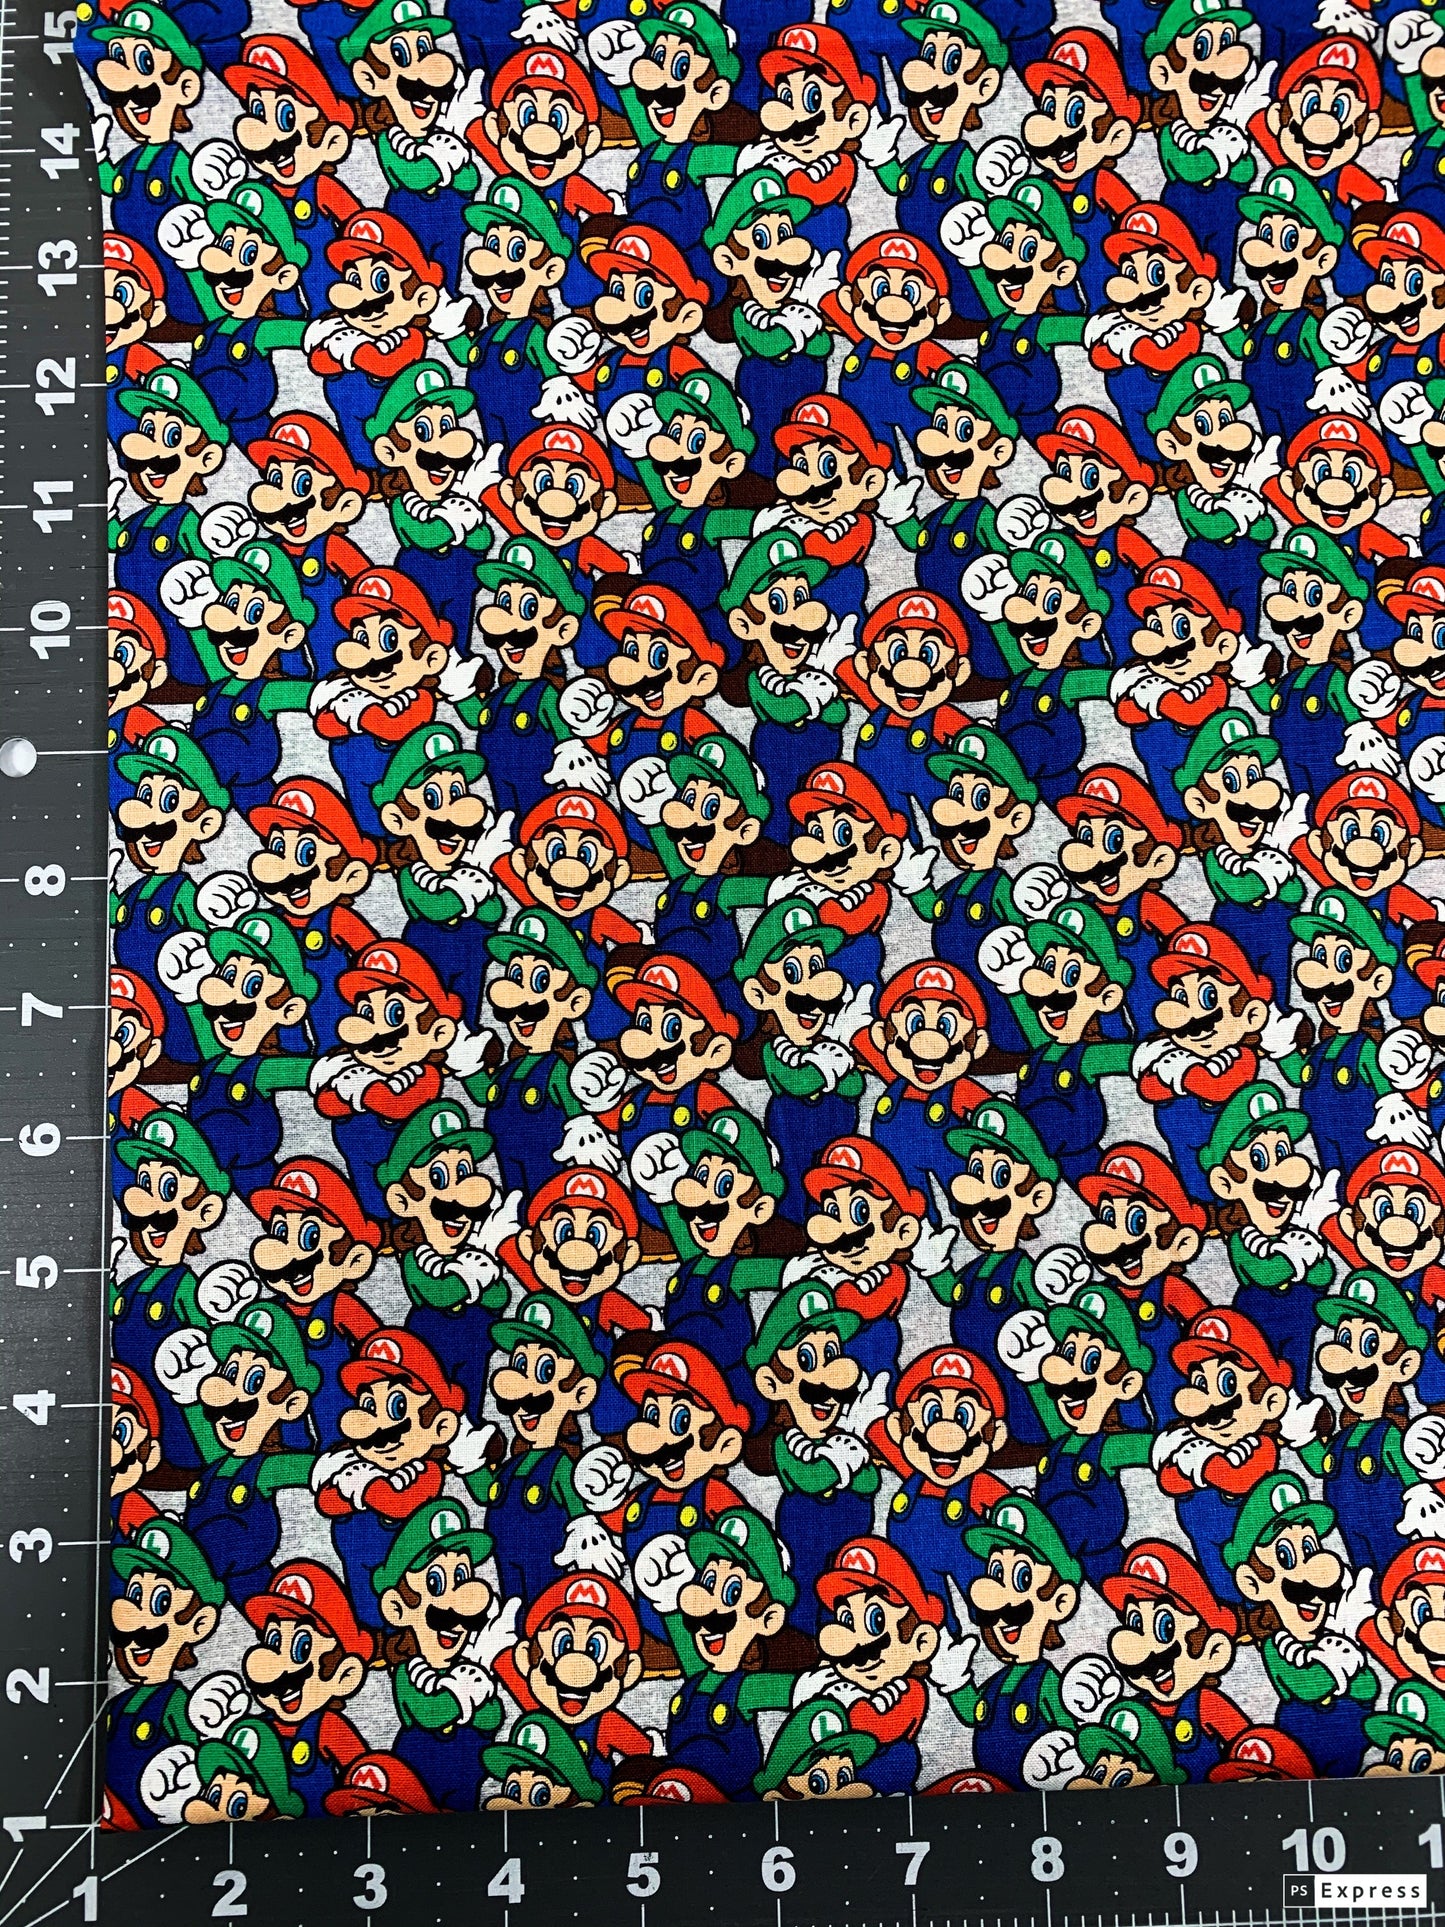 Super Mario fabric Mario Luigi game fabric